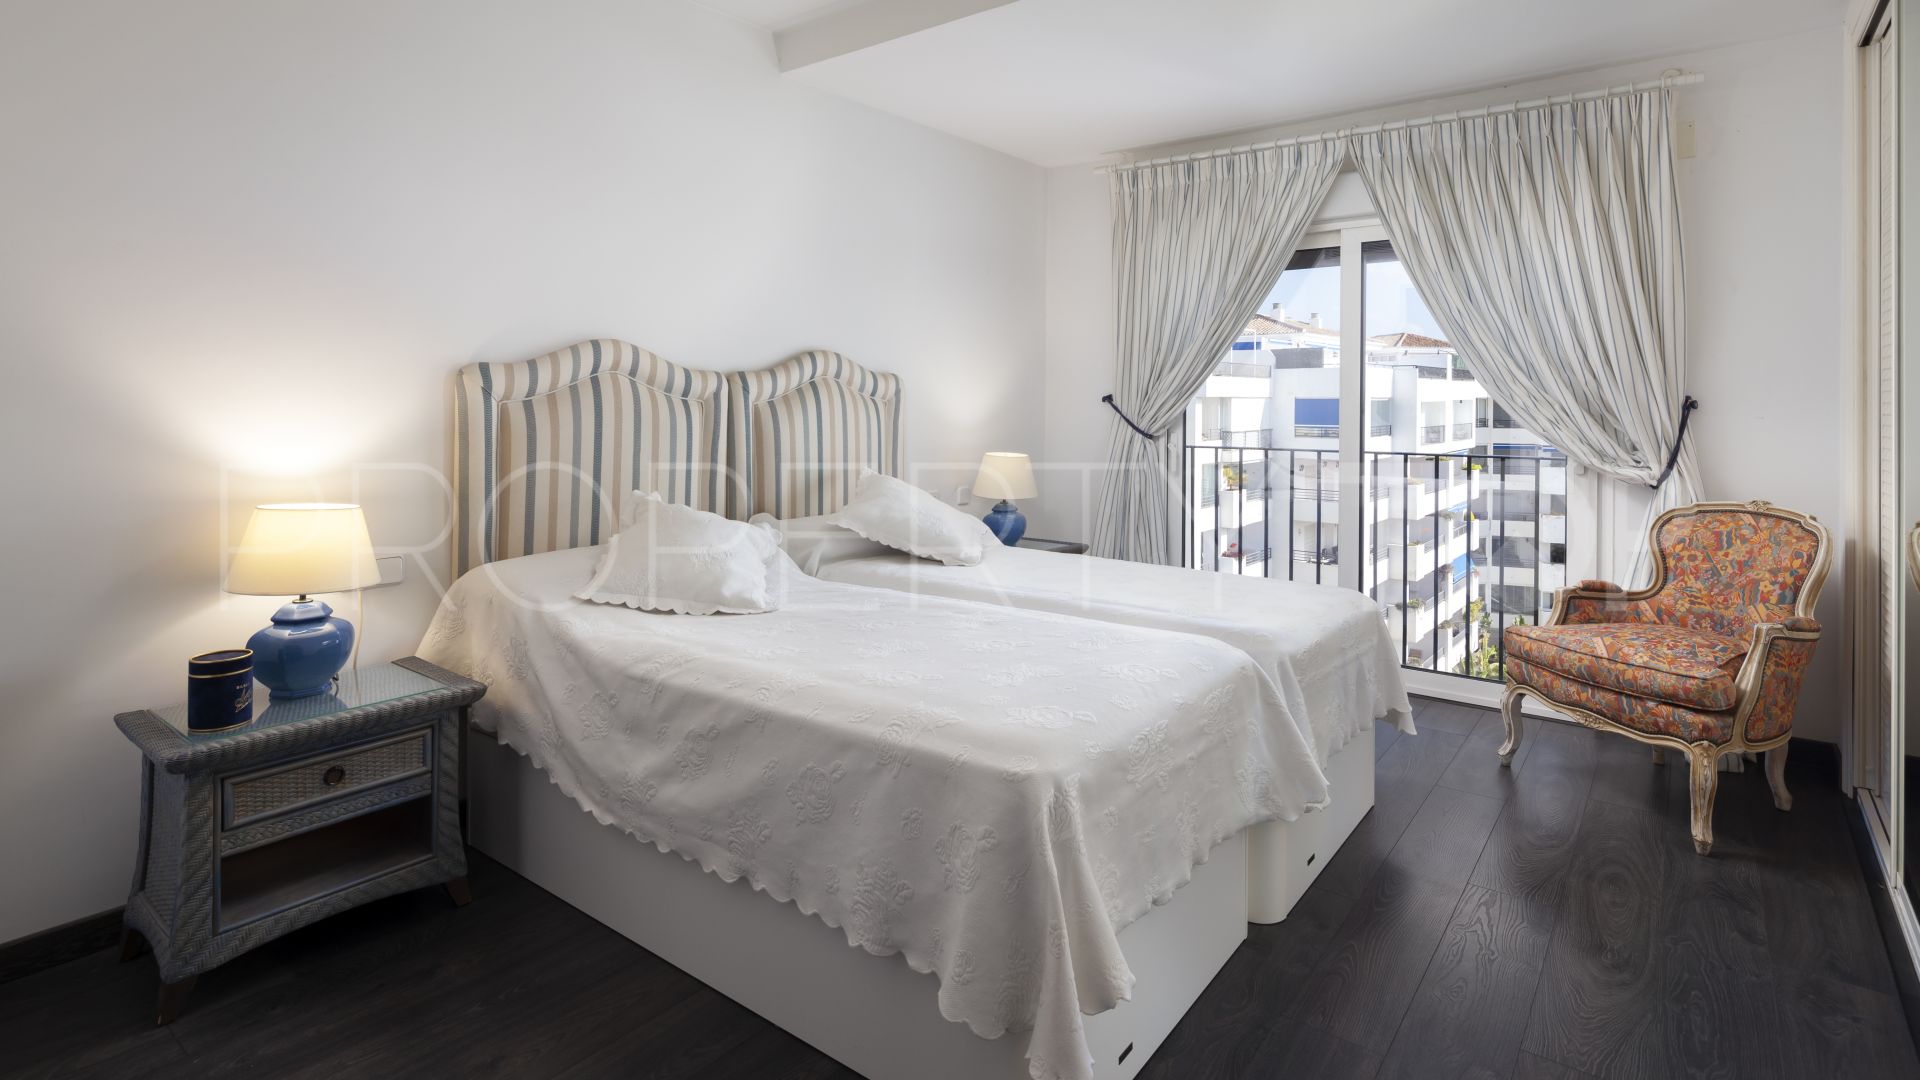 Atico en venta de 3 dormitorios en Marbella - Puerto Banus